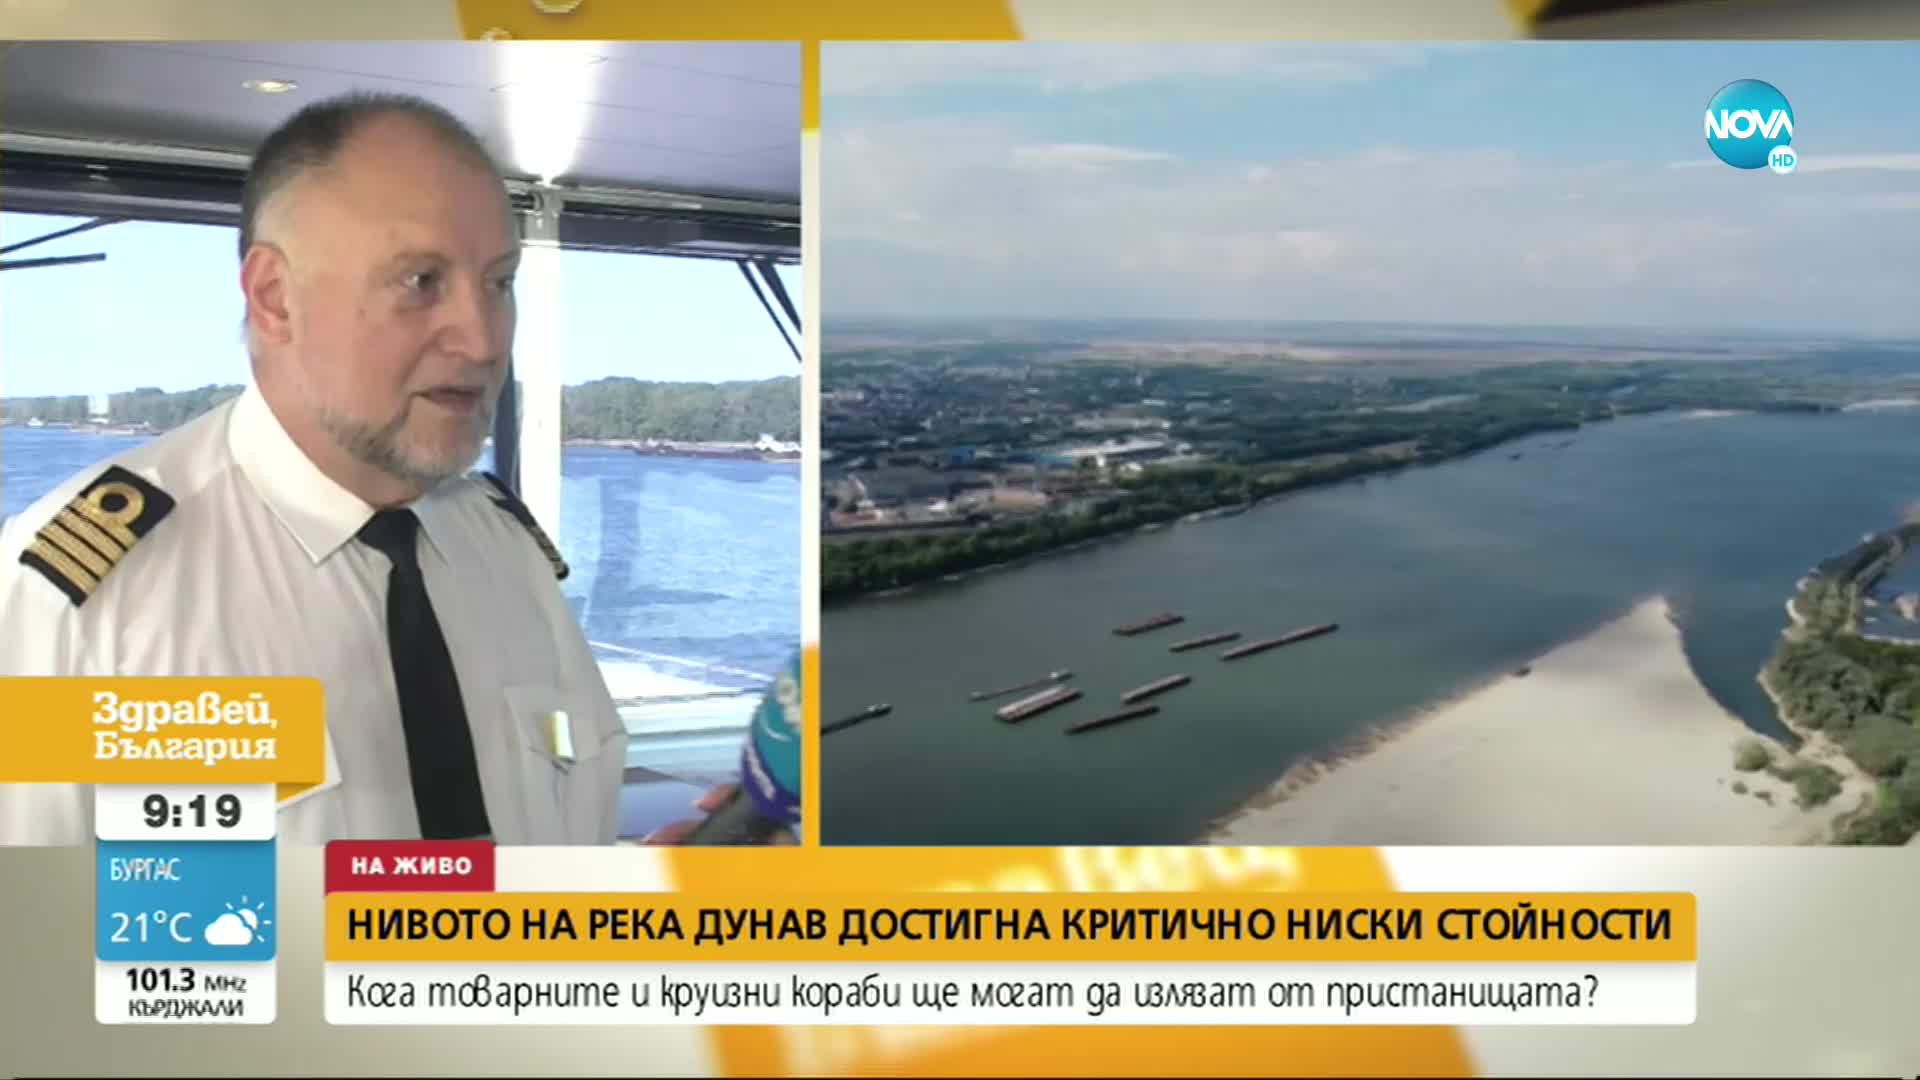 Нивото на Дунав достигна критично ниско ниво